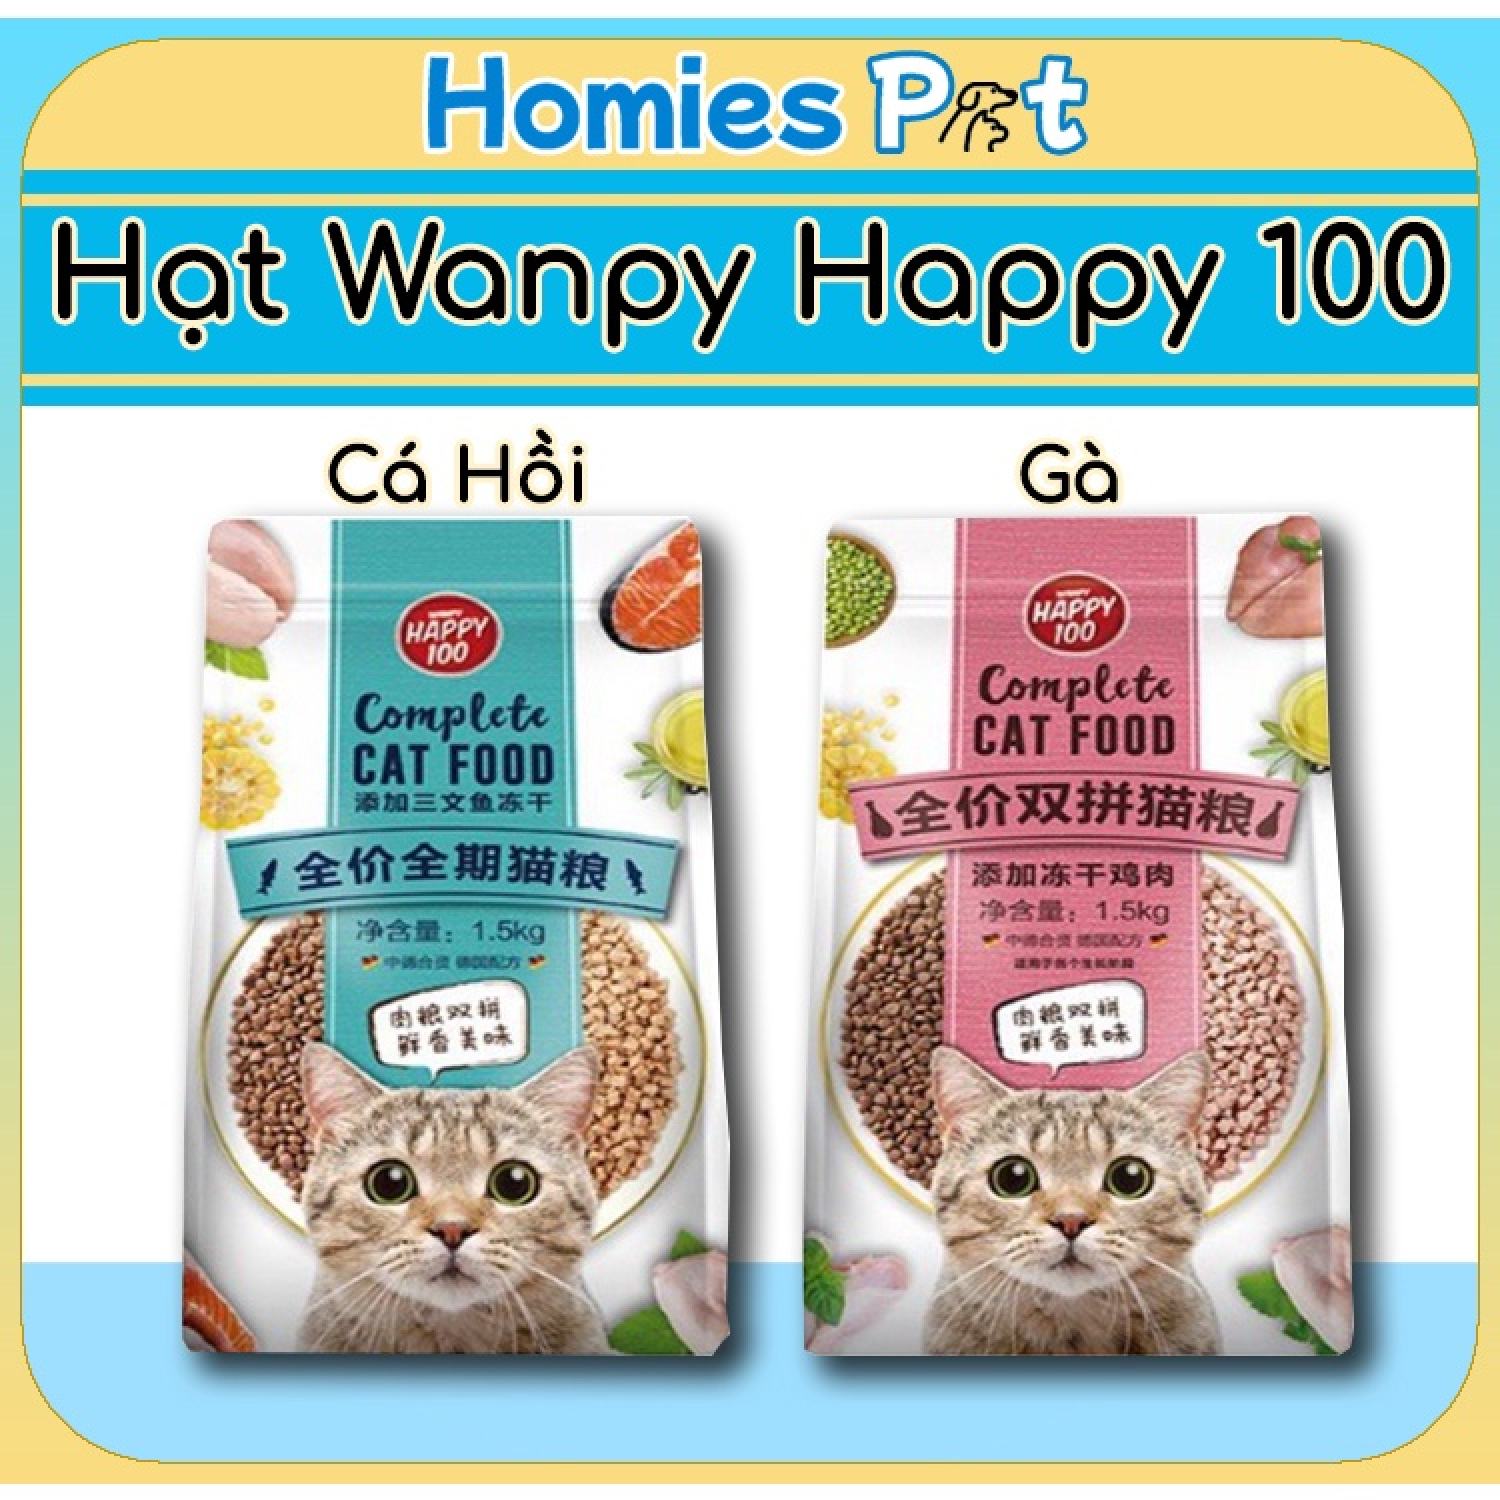 Hạt Wanpy Happy 100 1.5kg, thức ăn cho mèo - Homies Pet